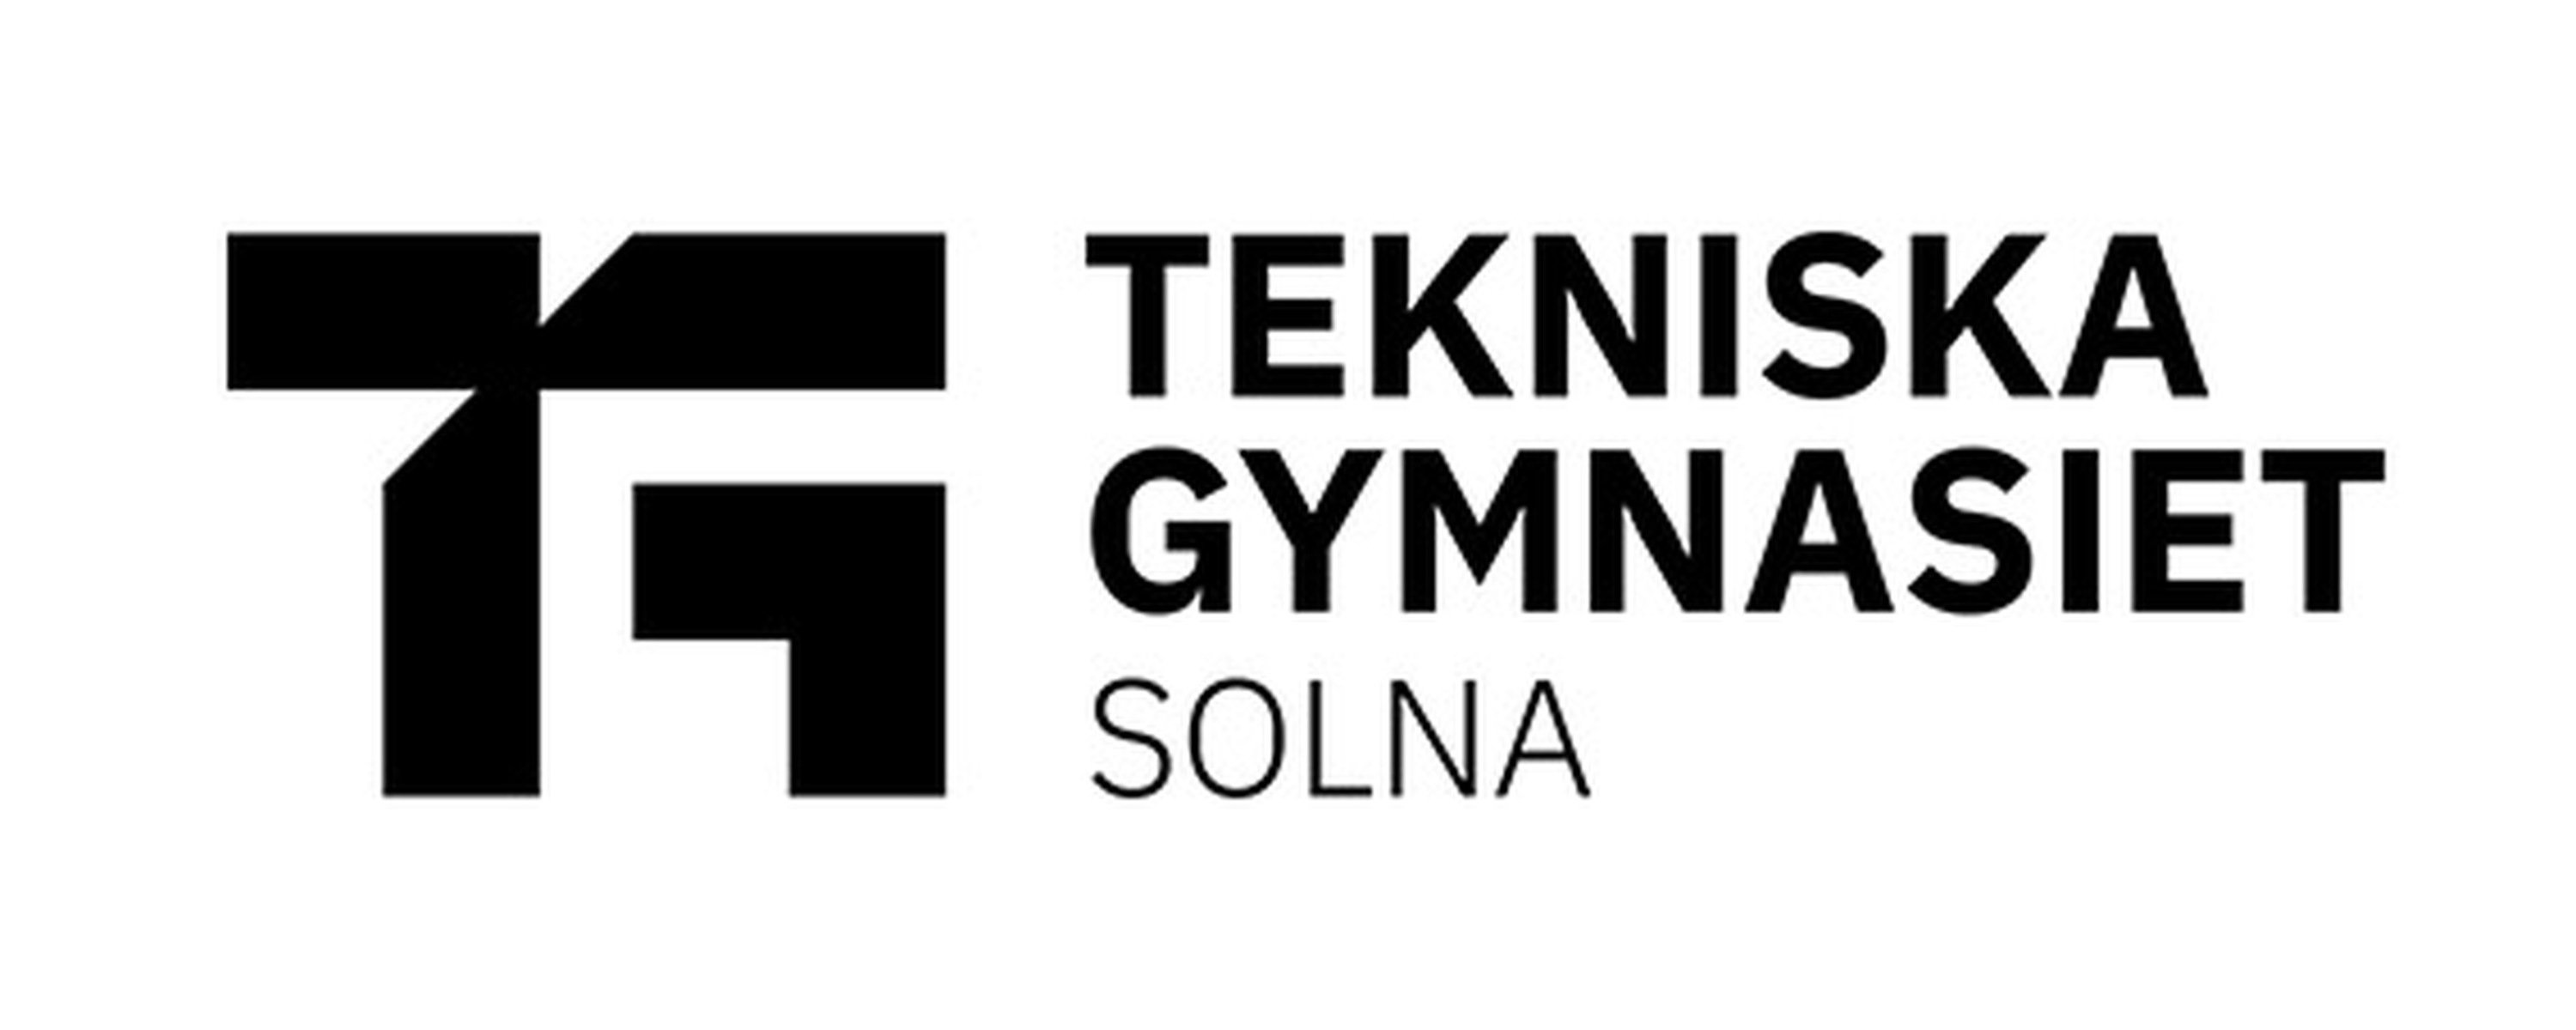 Tekniska Gymnasiet Solna